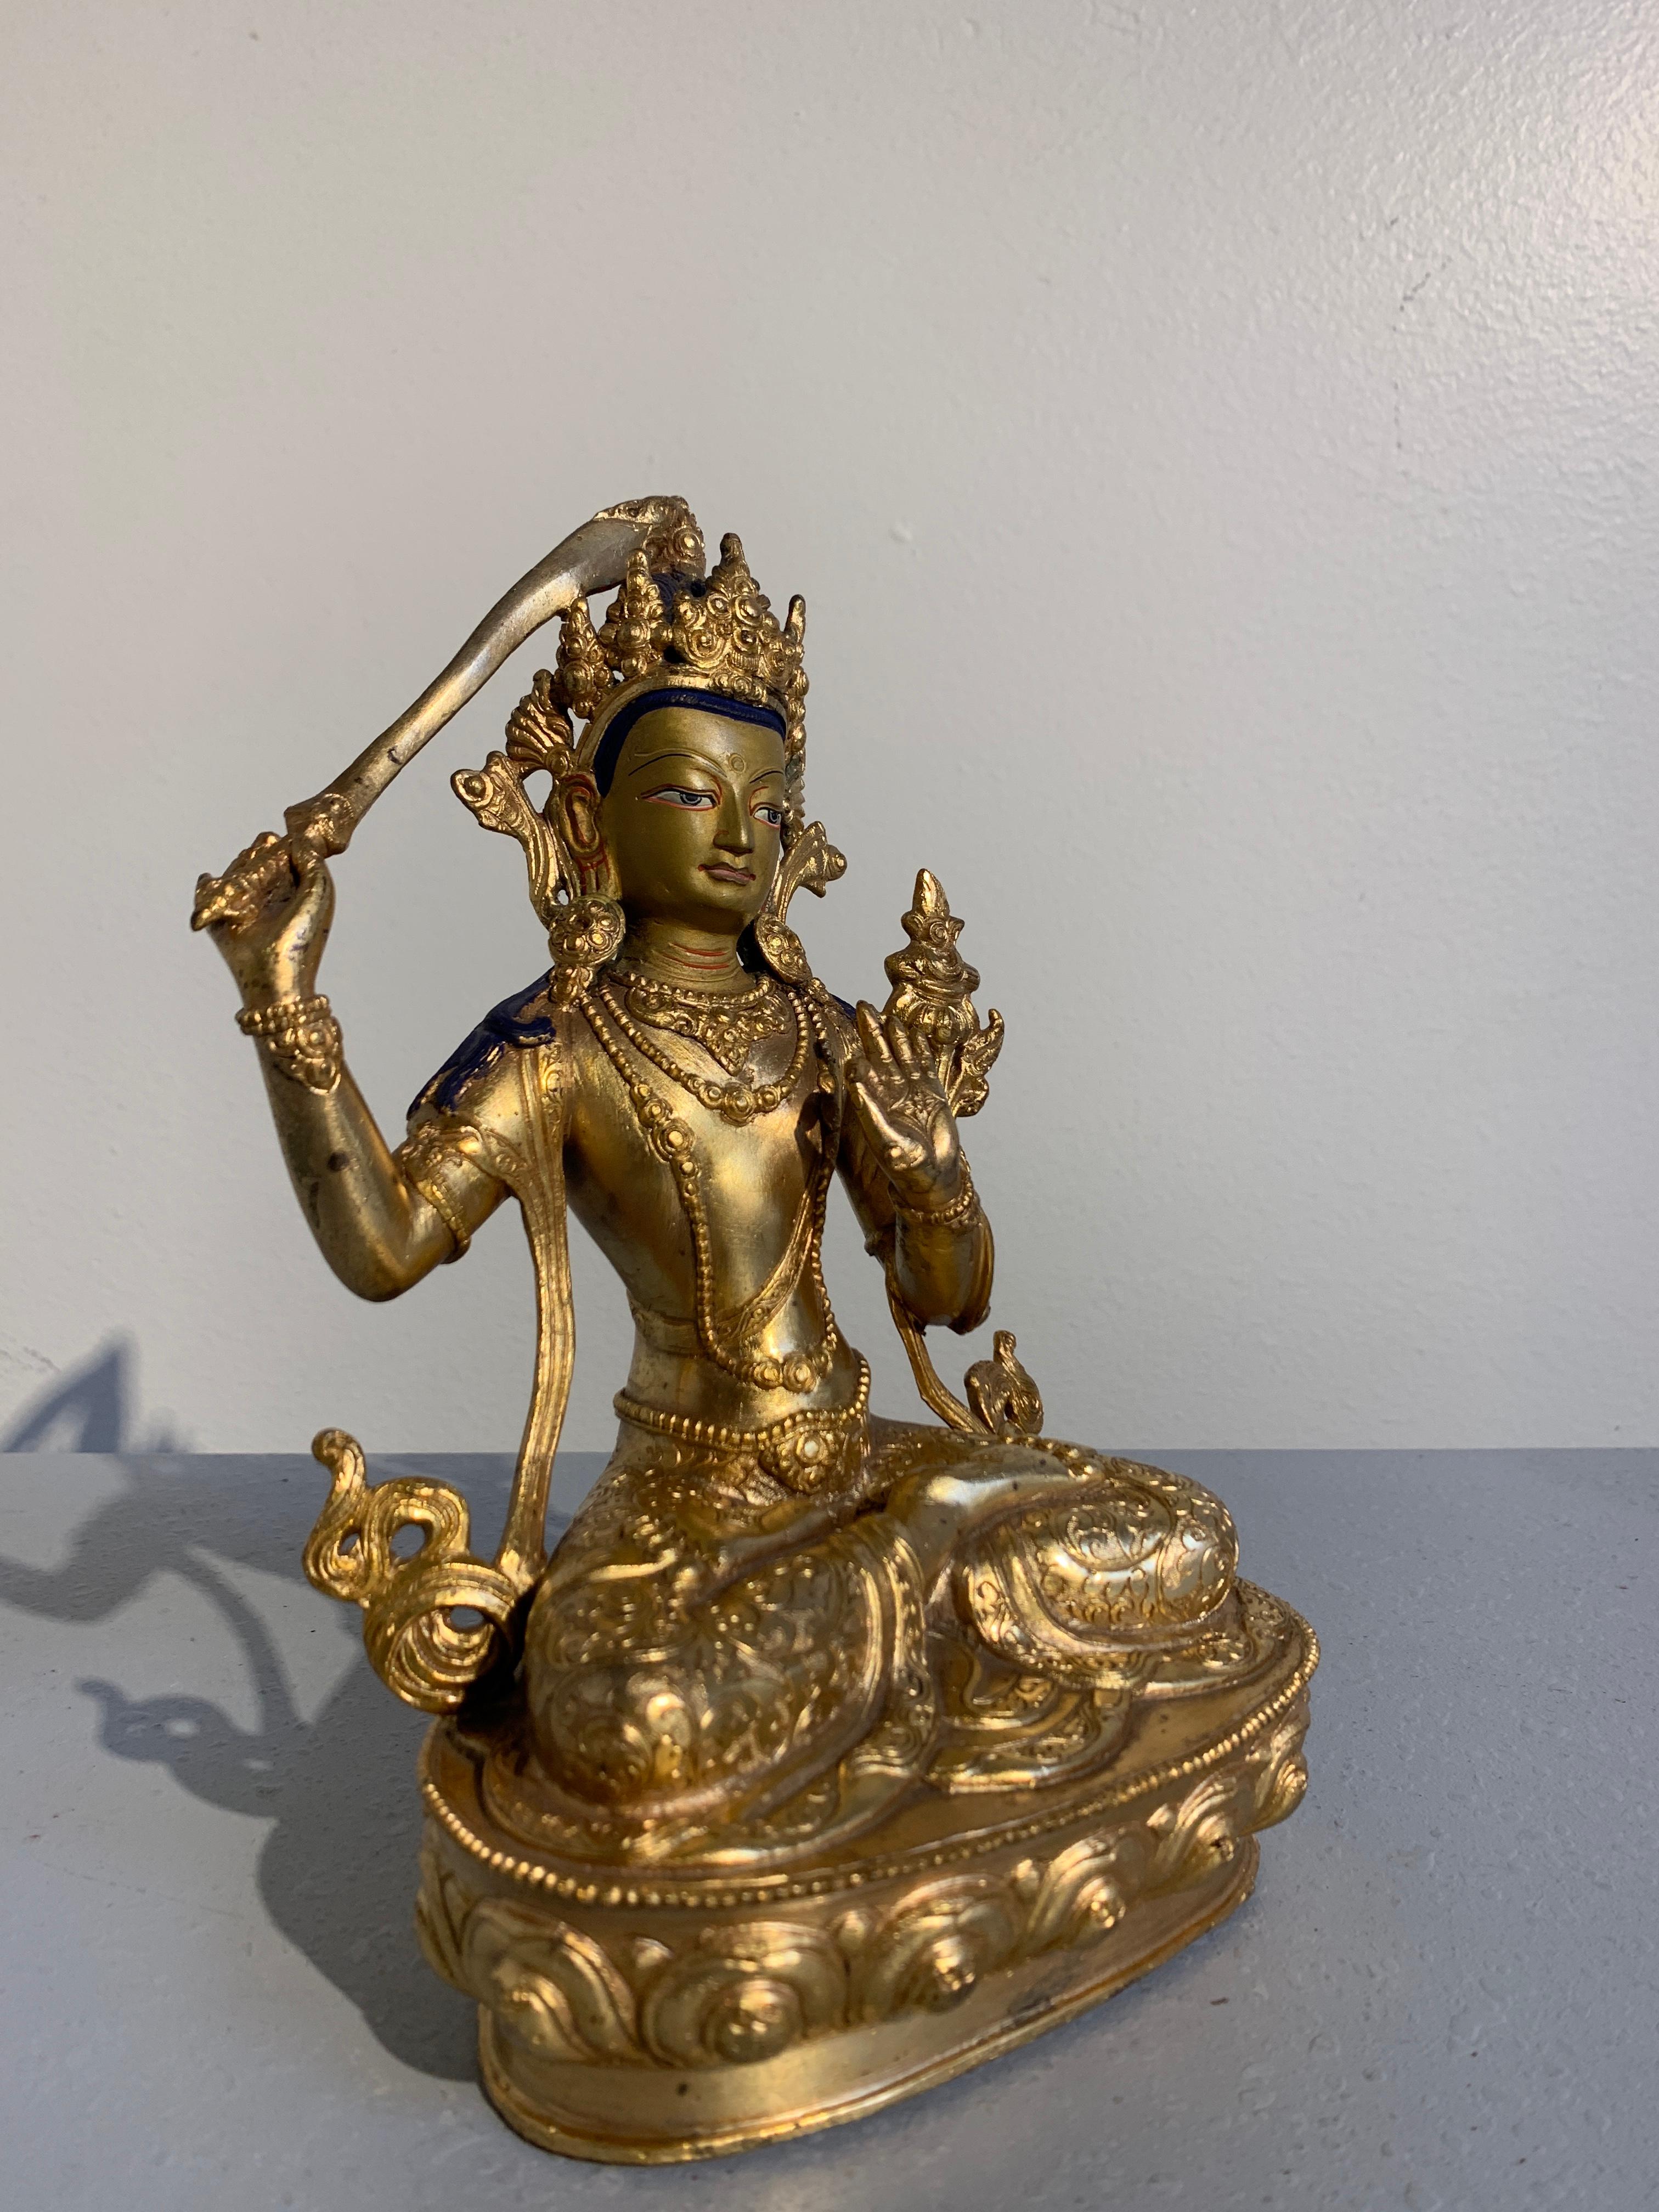 Belle figure népalaise en bronze doré représentant Manjushri, le Bodhisattva de la sagesse, datant du début ou du milieu du XXe siècle. 

Le Bodhisattva de la sagesse transcendante est assis sur un piédestal en forme de lotus, les jambes croisées